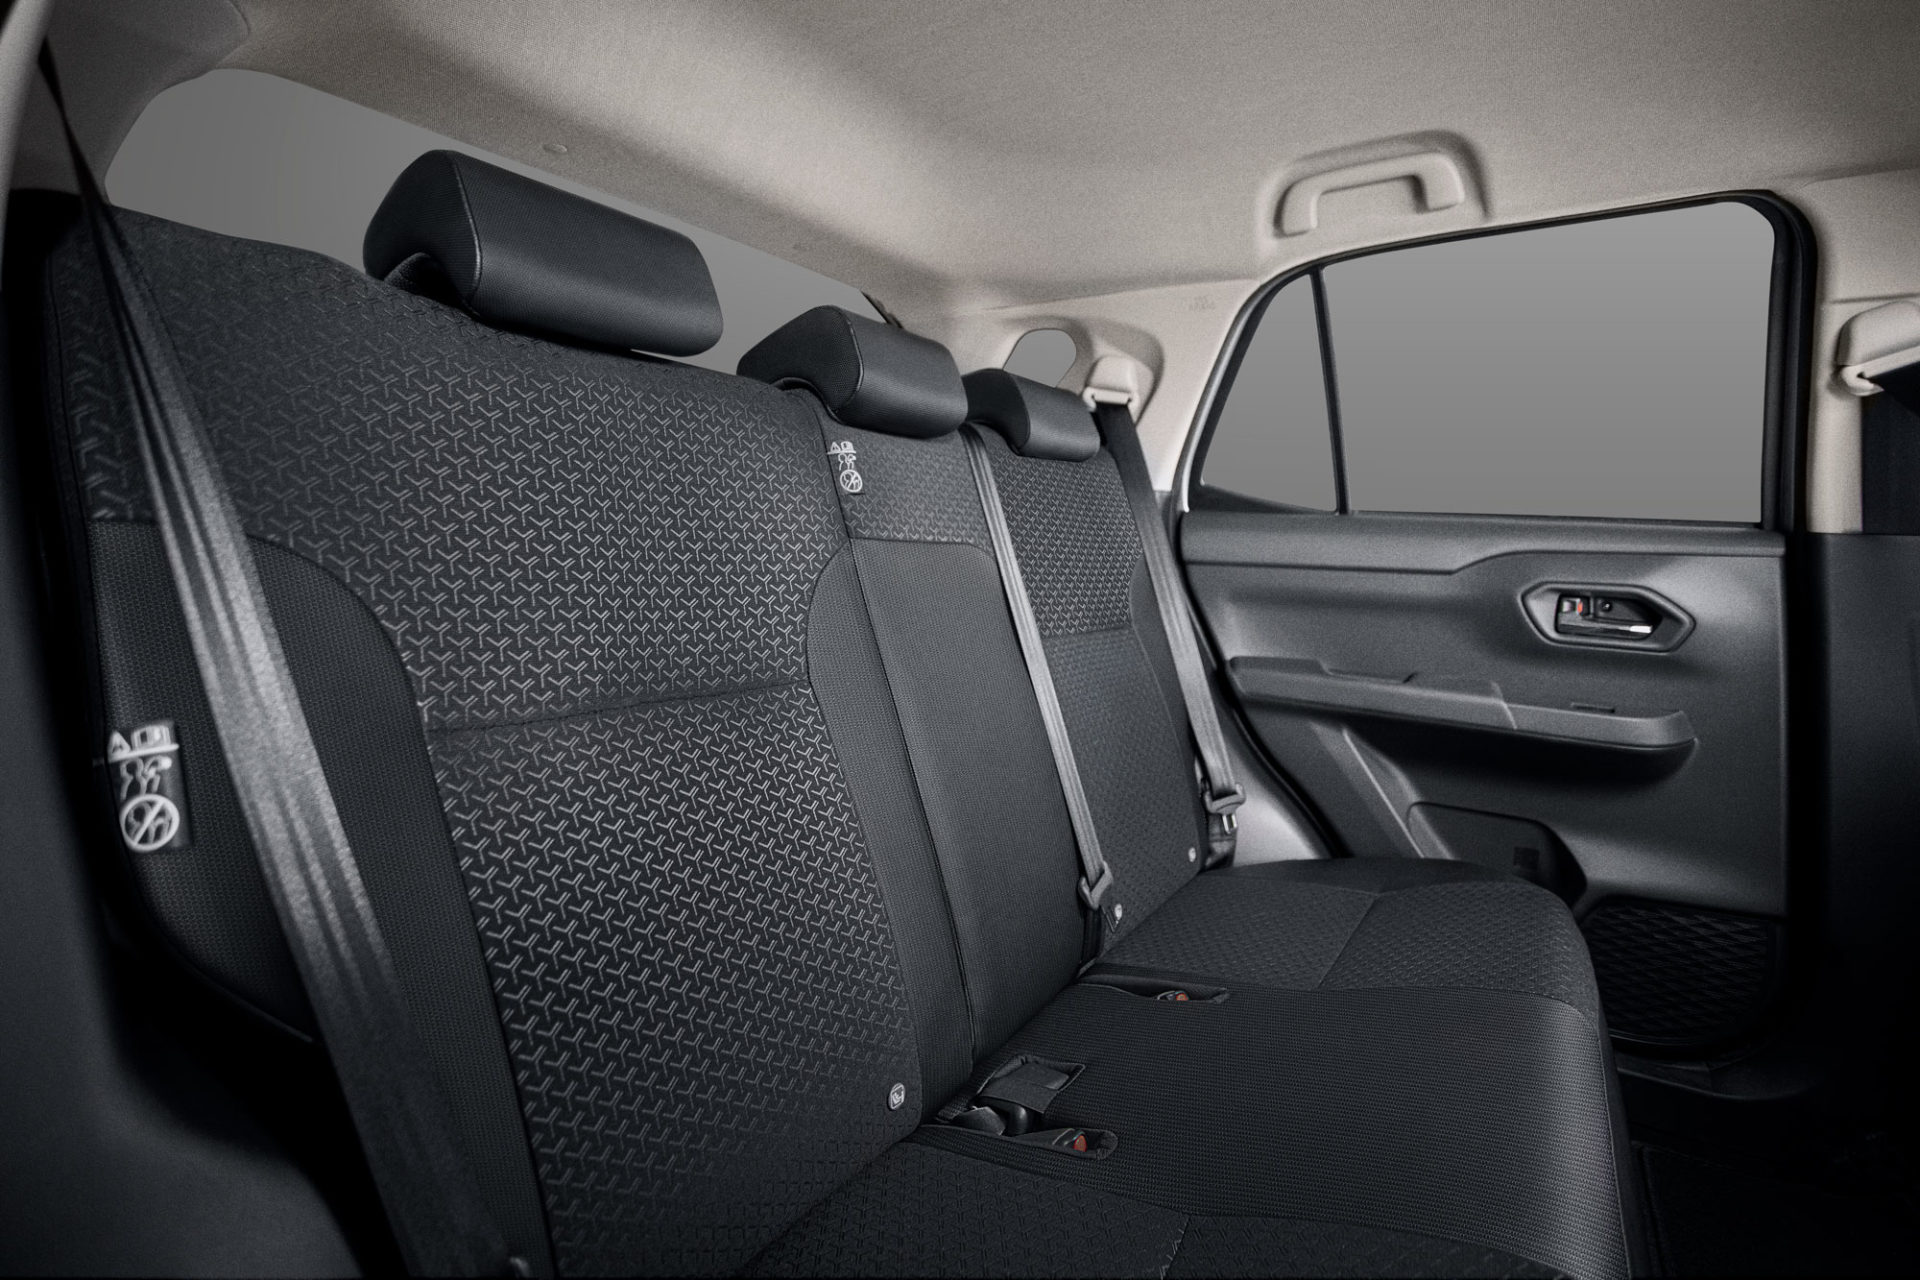 FÁCIL DE APROVECHAR
Disfruta al máximo cada viaje con tu familia o amigos, gracias al amplio espacio interior de la nueva Toyota Raize y su capacidad de carga, de hasta 369l en la maletera.